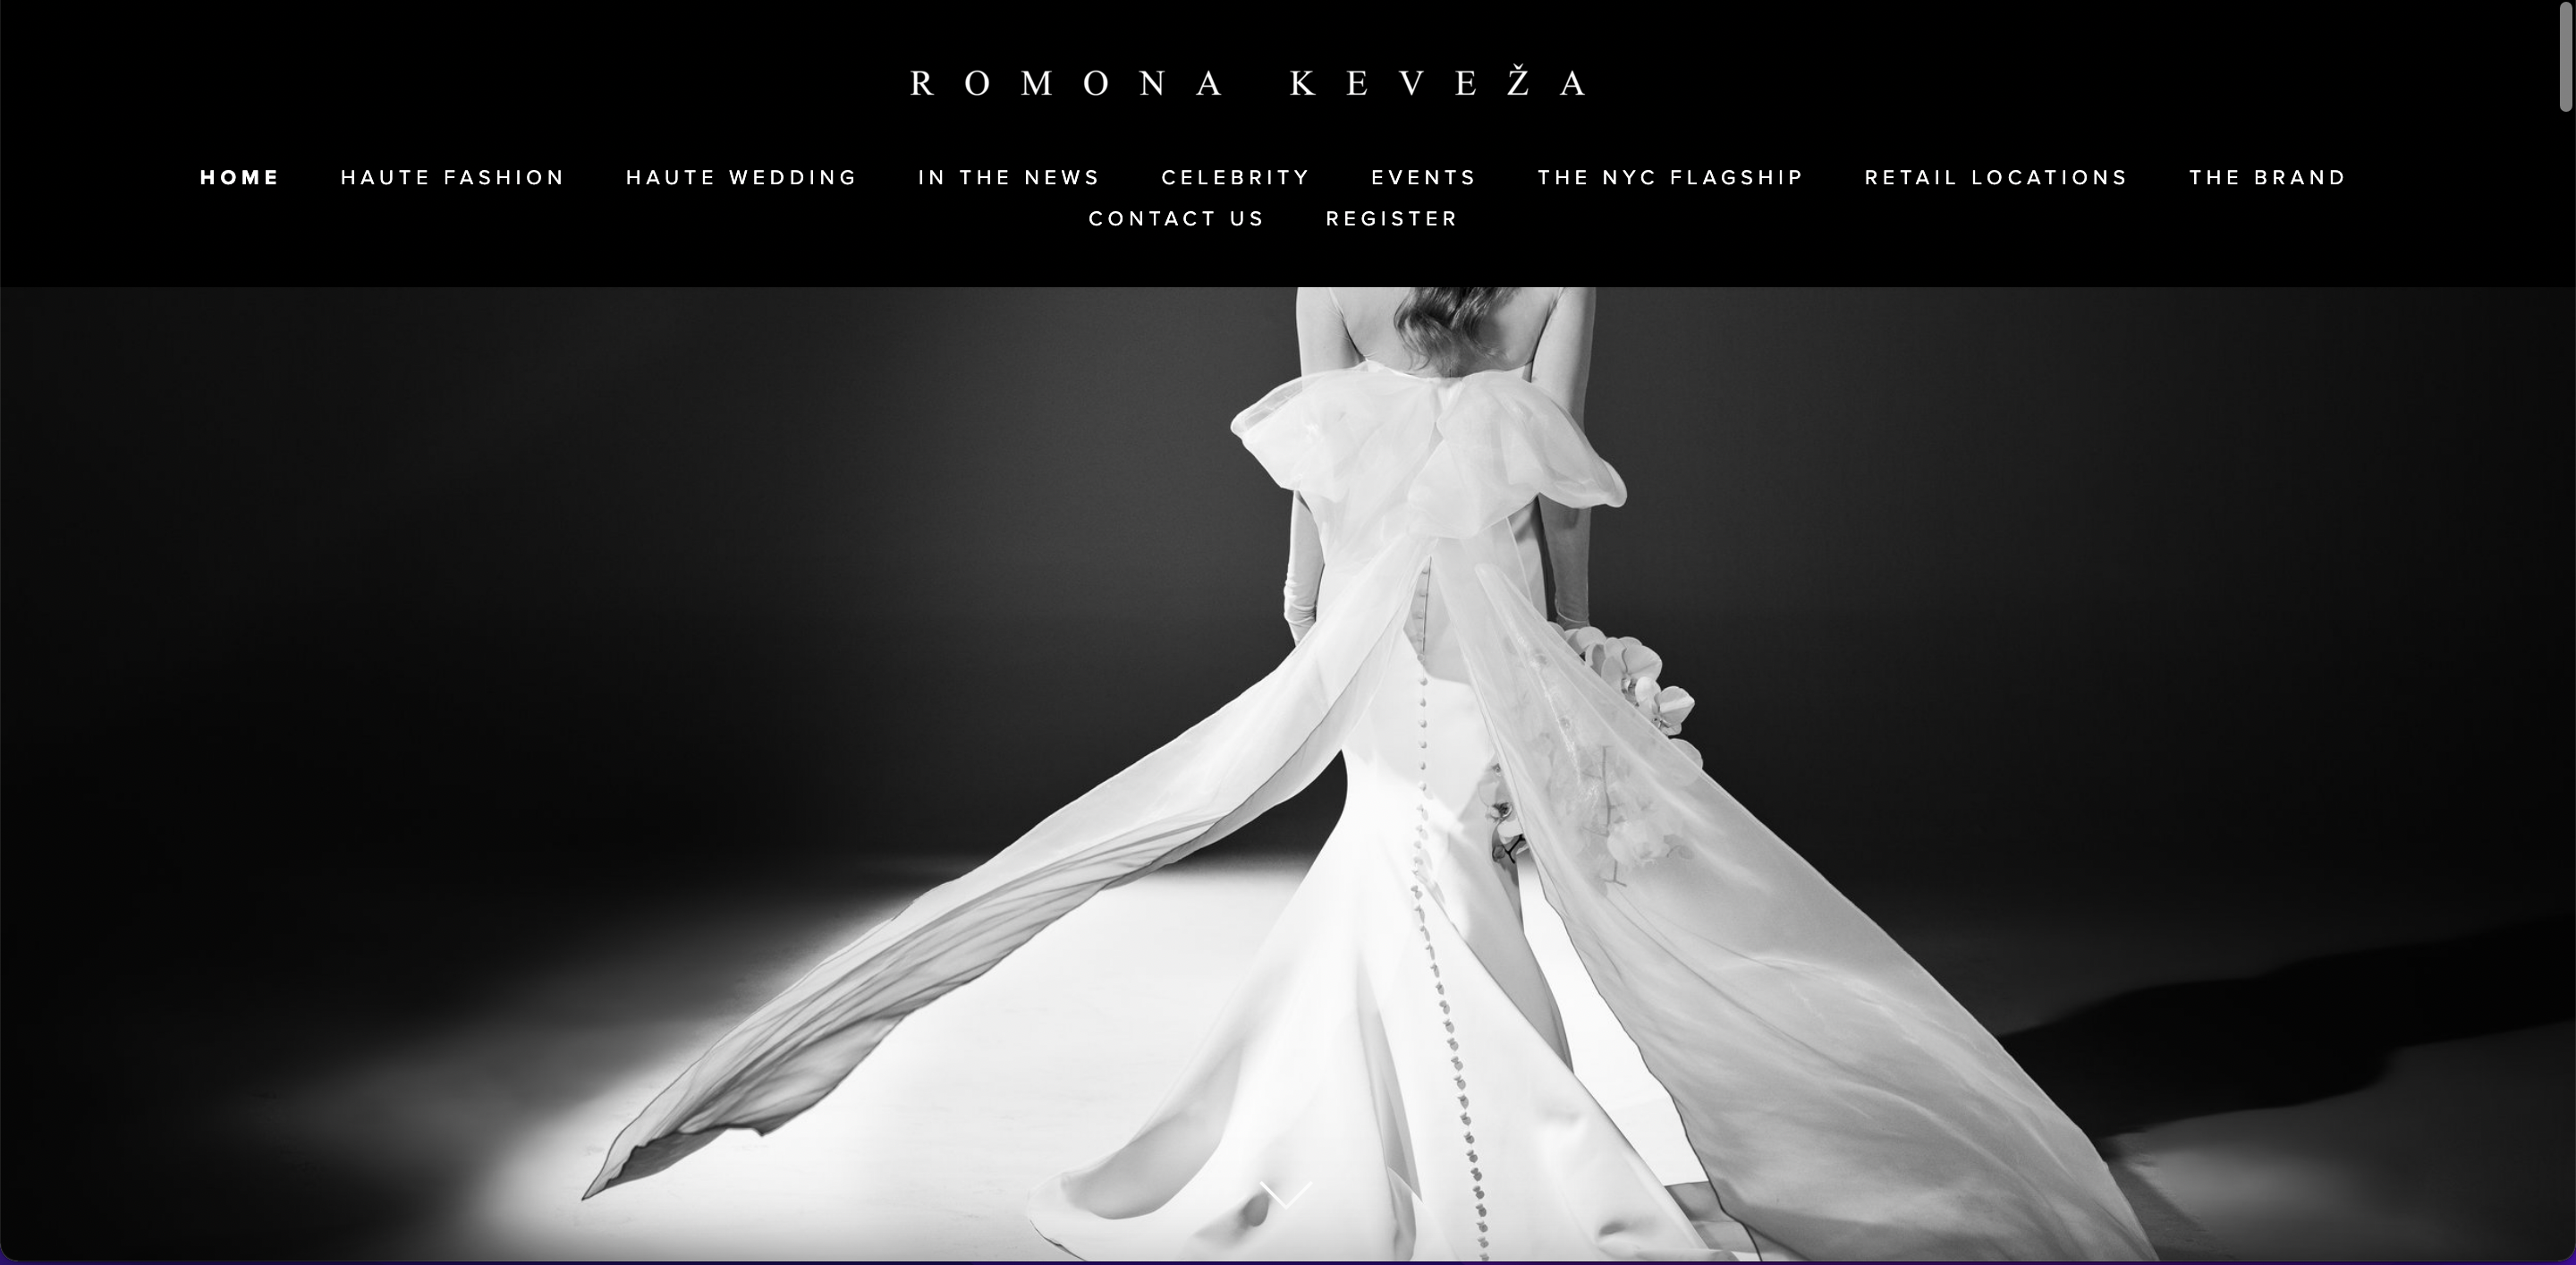 Romona Keveza